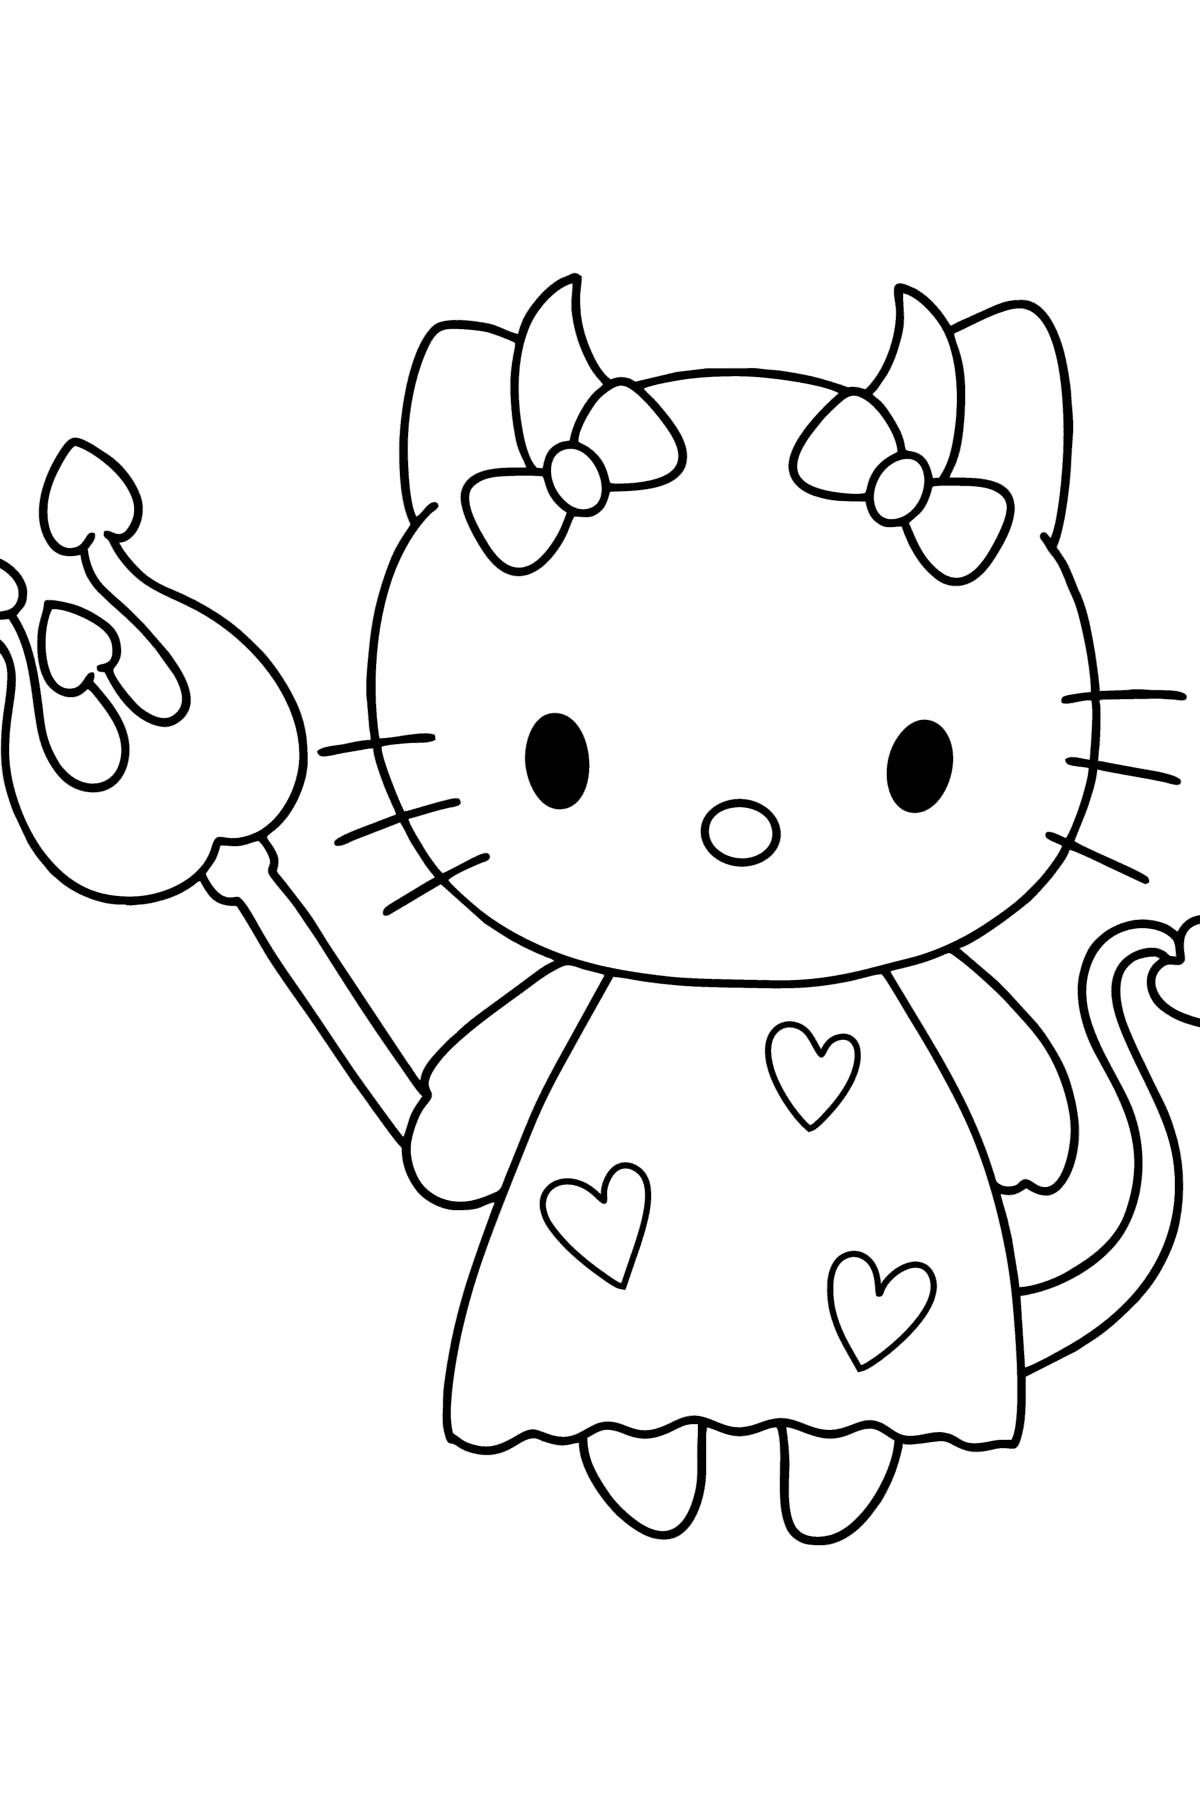 Desenho para colorir Hello Kitty Devil - Imagens para Colorir para Crianças